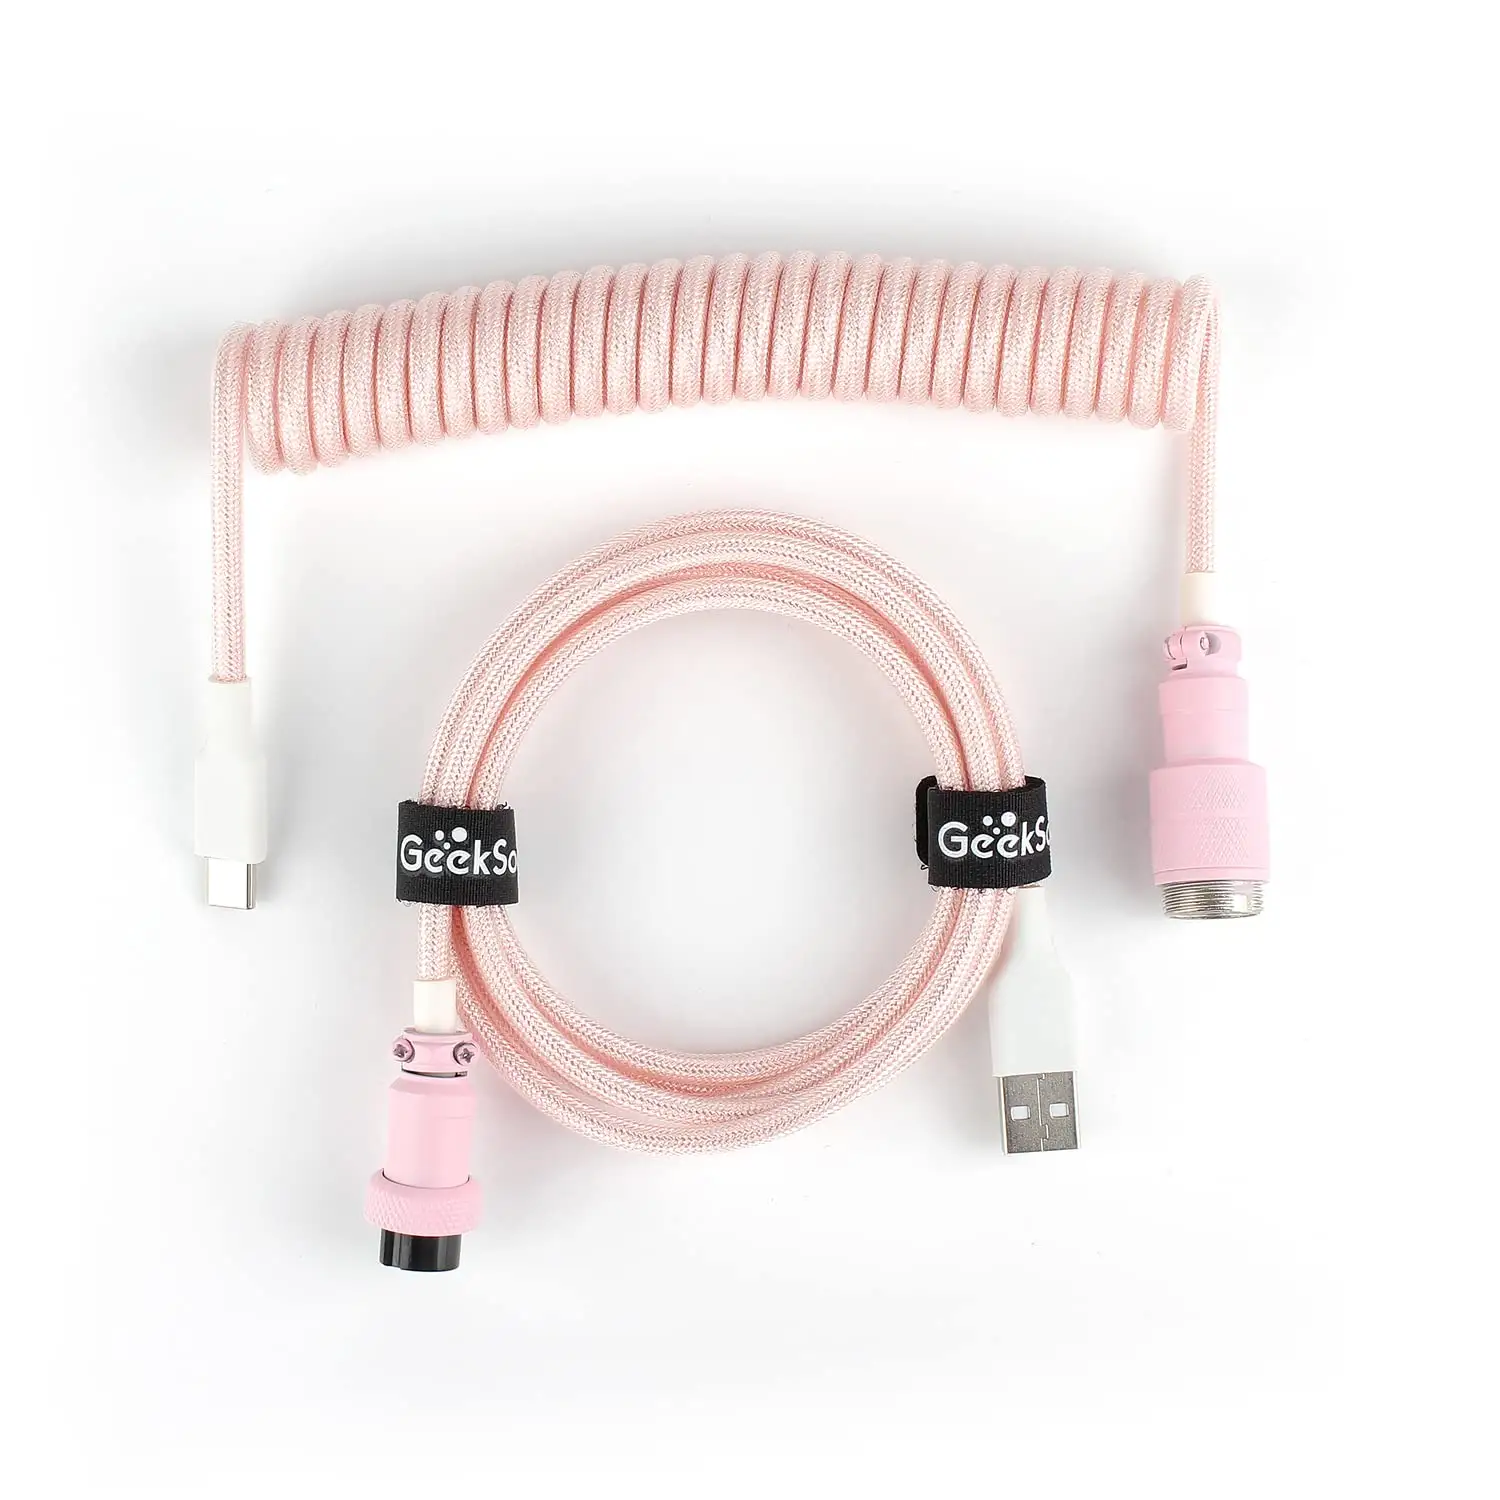 Kabel aviator kabel Data cepat Usb C, kabel permainan Keyboard mekanik USB 4pin 5pin Gx16 Gx12 yc8